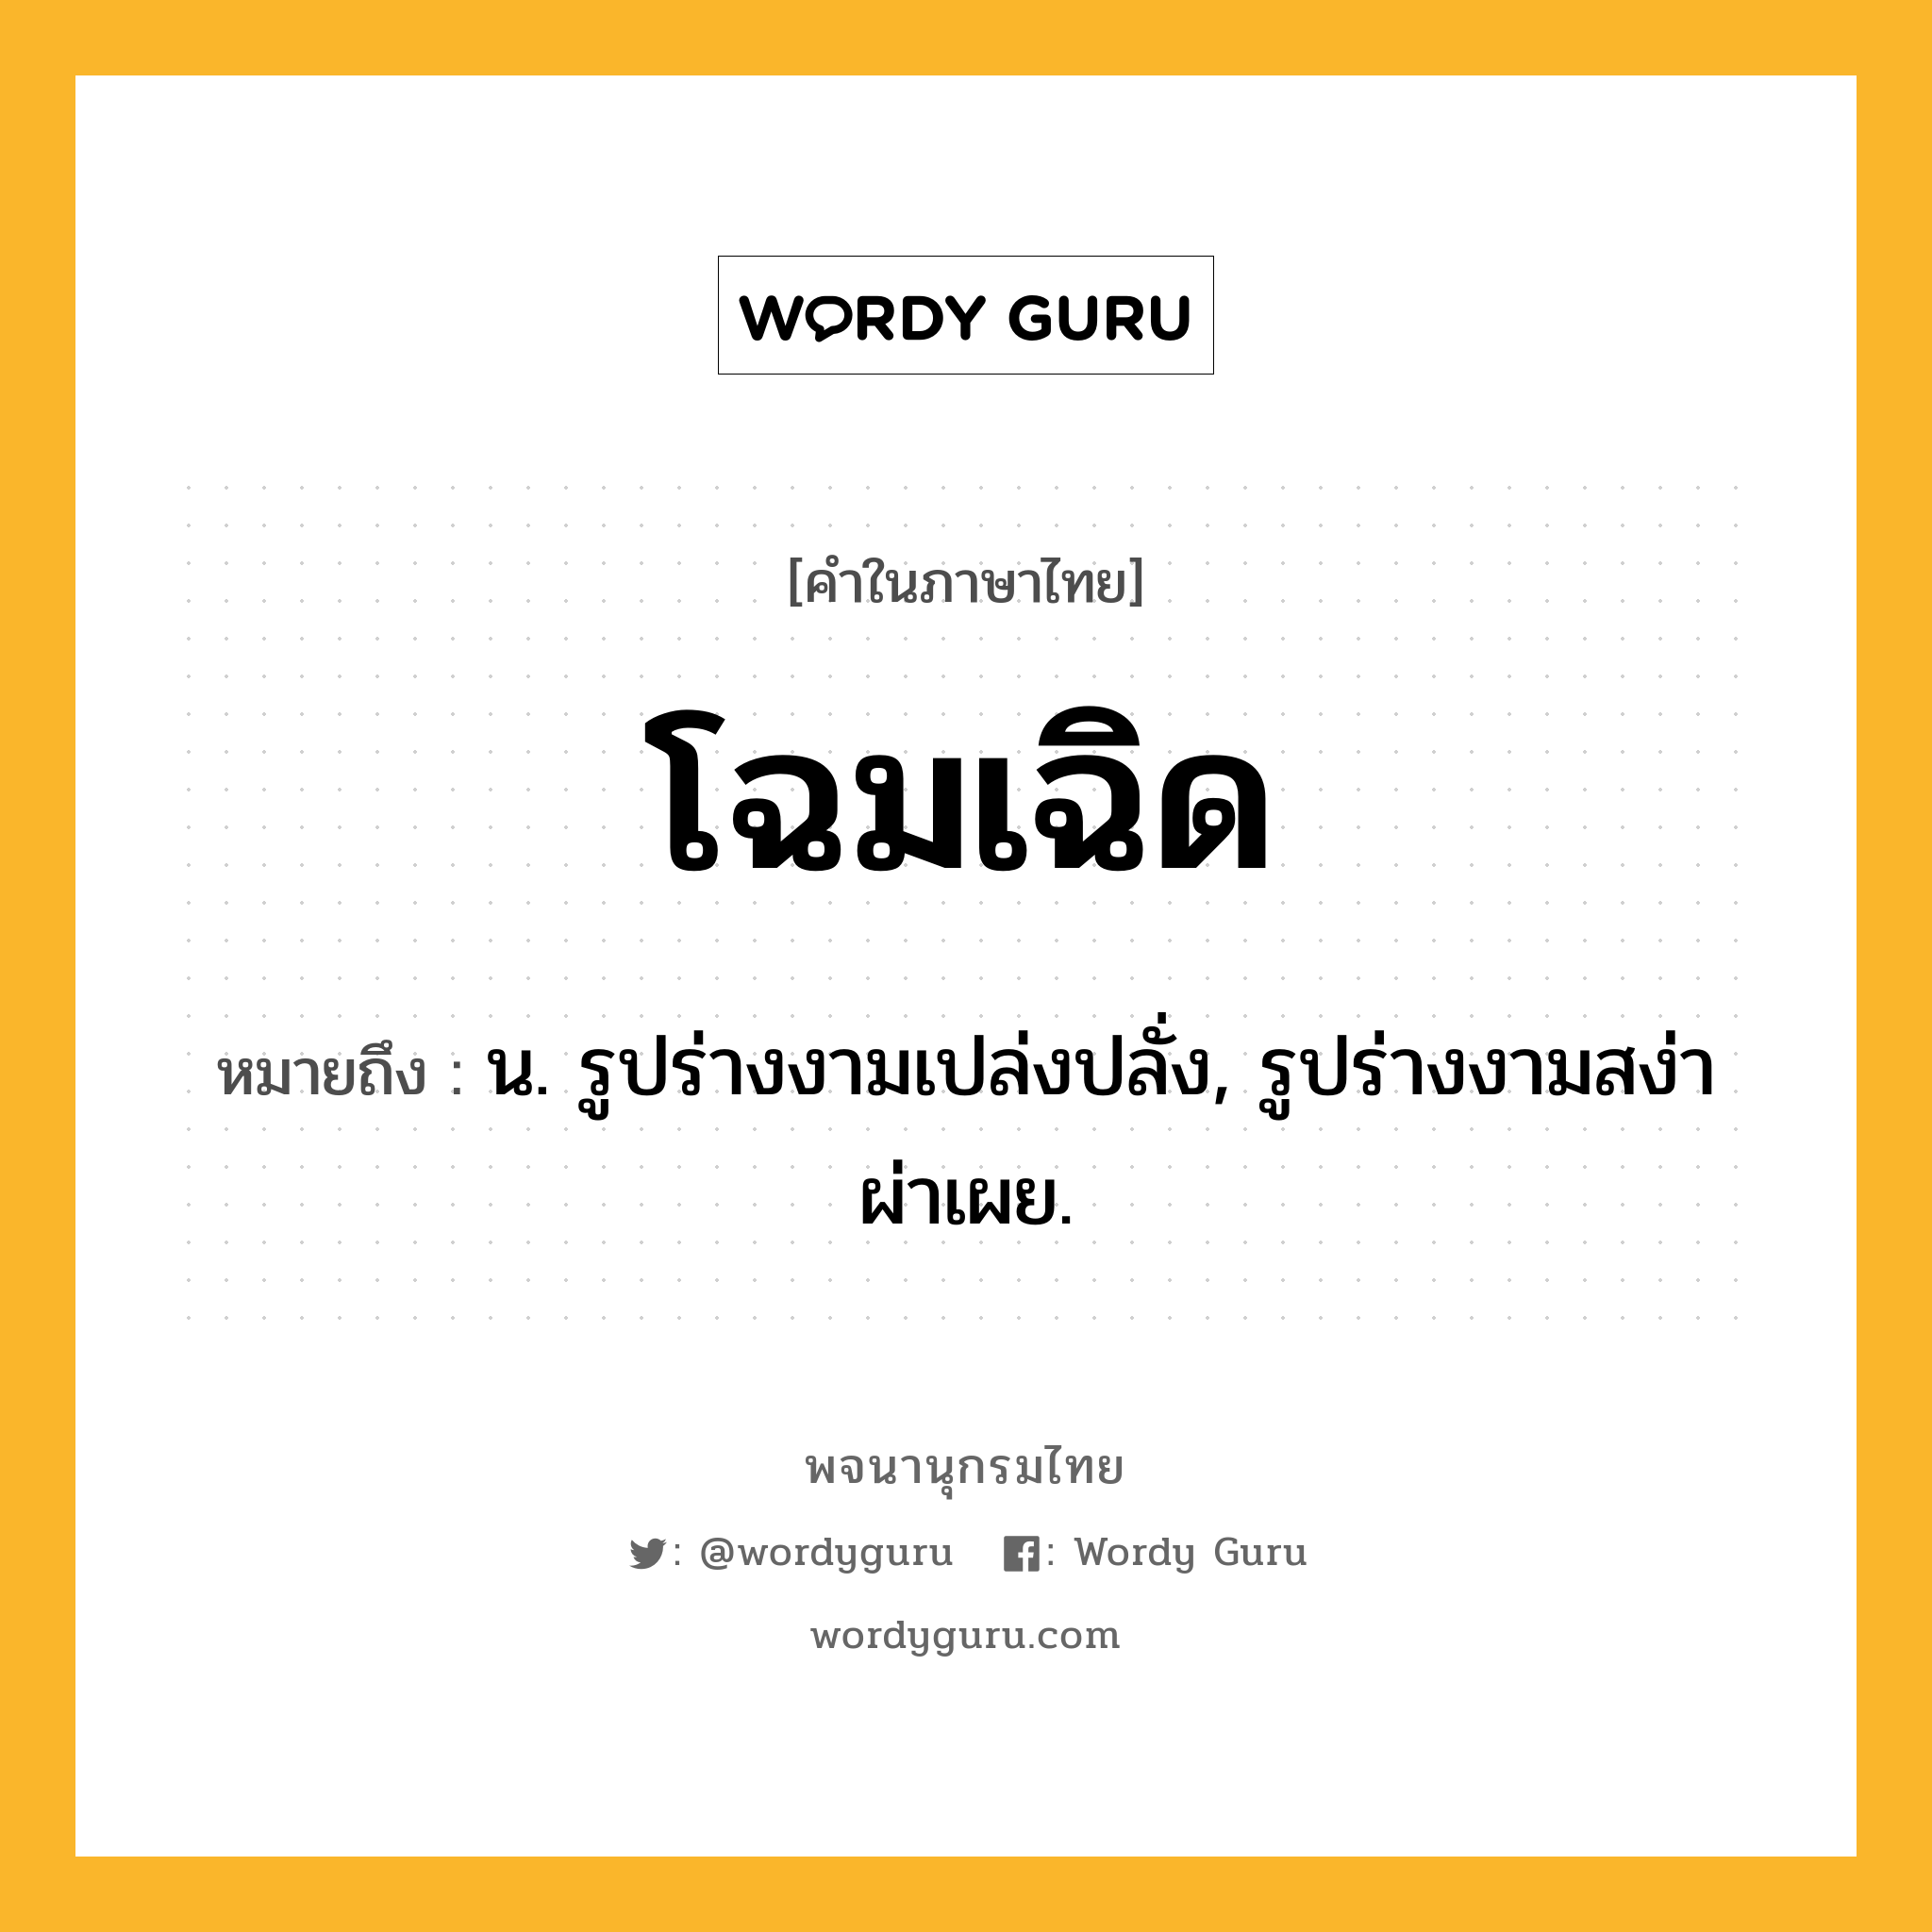 โฉมเฉิด ความหมาย หมายถึงอะไร?, คำในภาษาไทย โฉมเฉิด หมายถึง น. รูปร่างงามเปล่งปลั่ง, รูปร่างงามสง่าผ่าเผย.